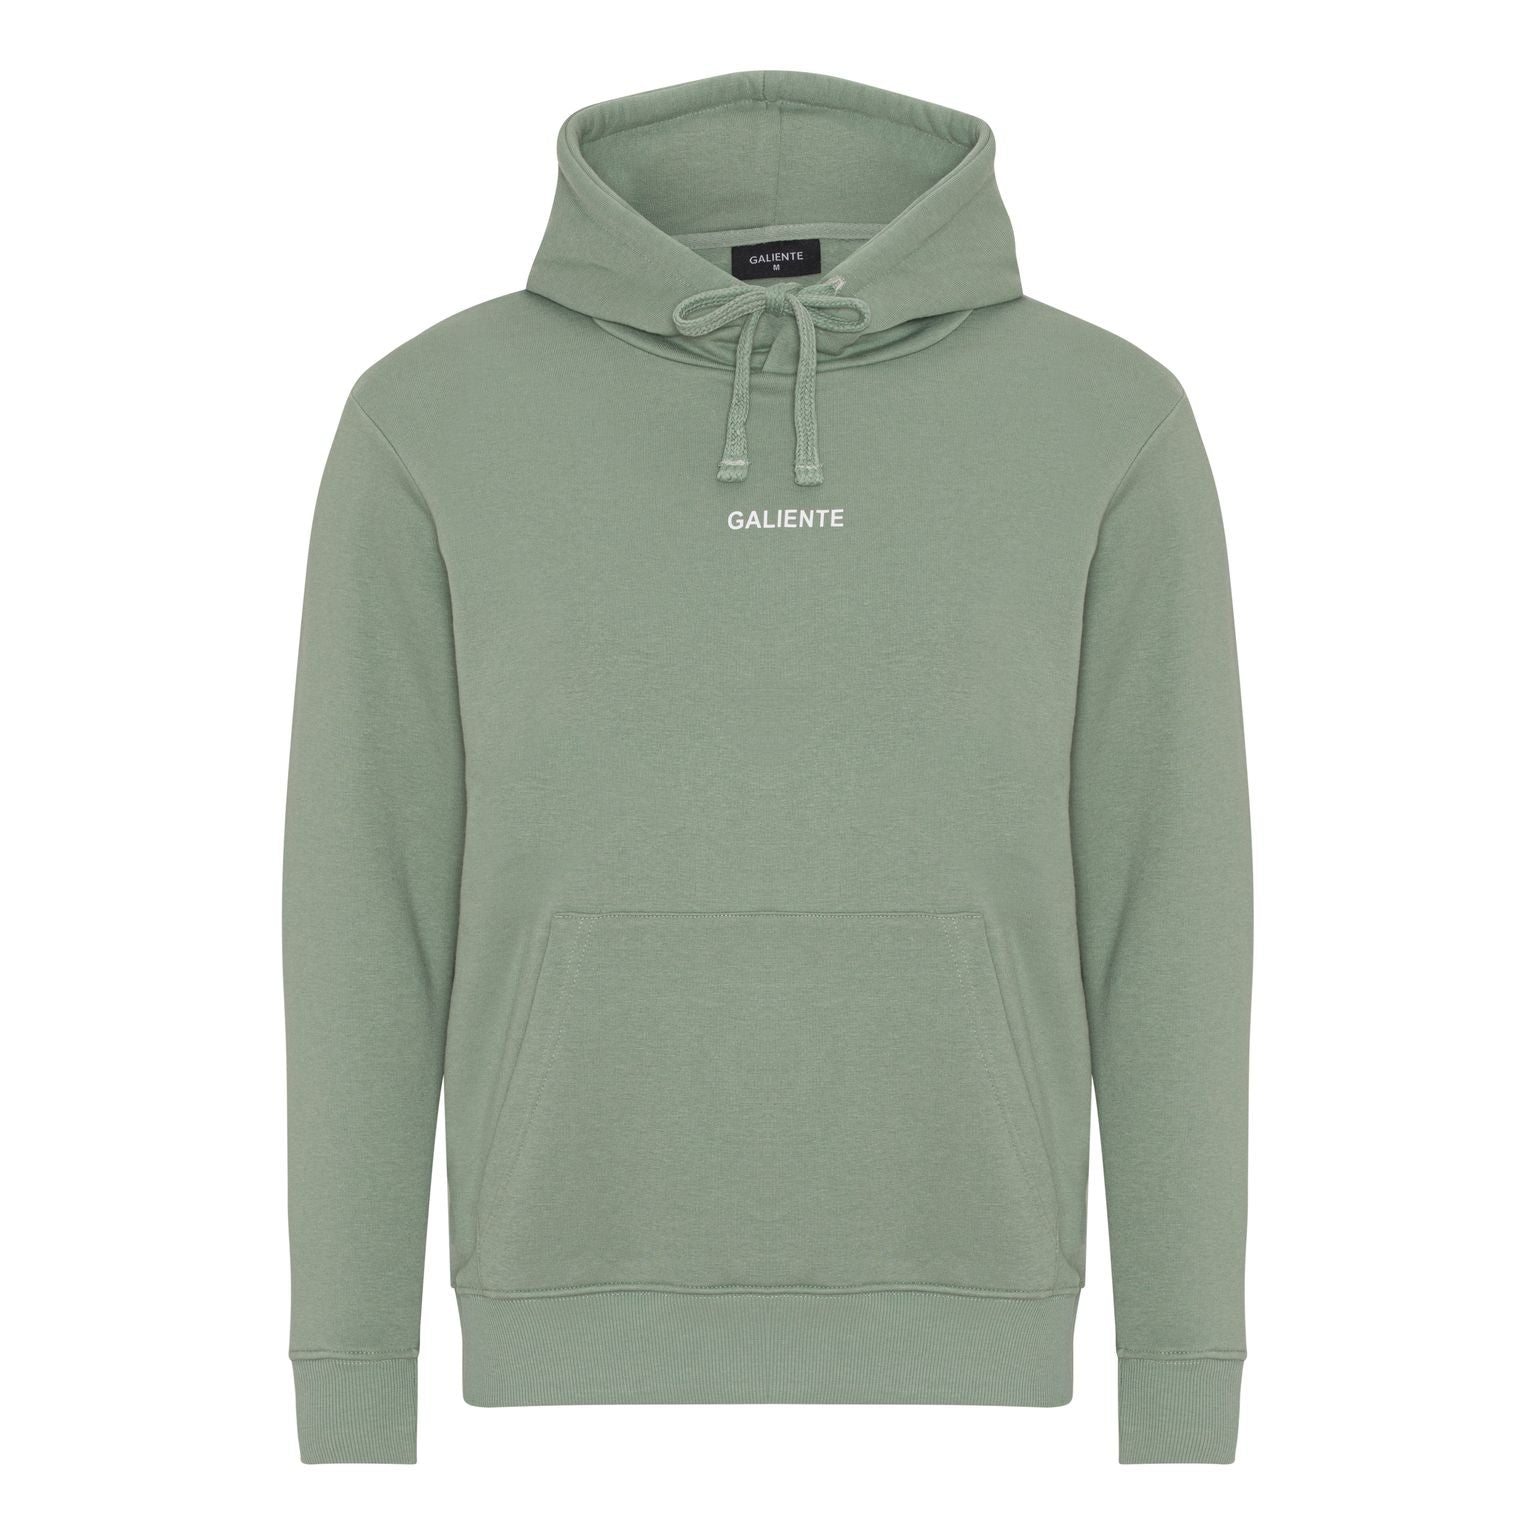 Olive green hoodie